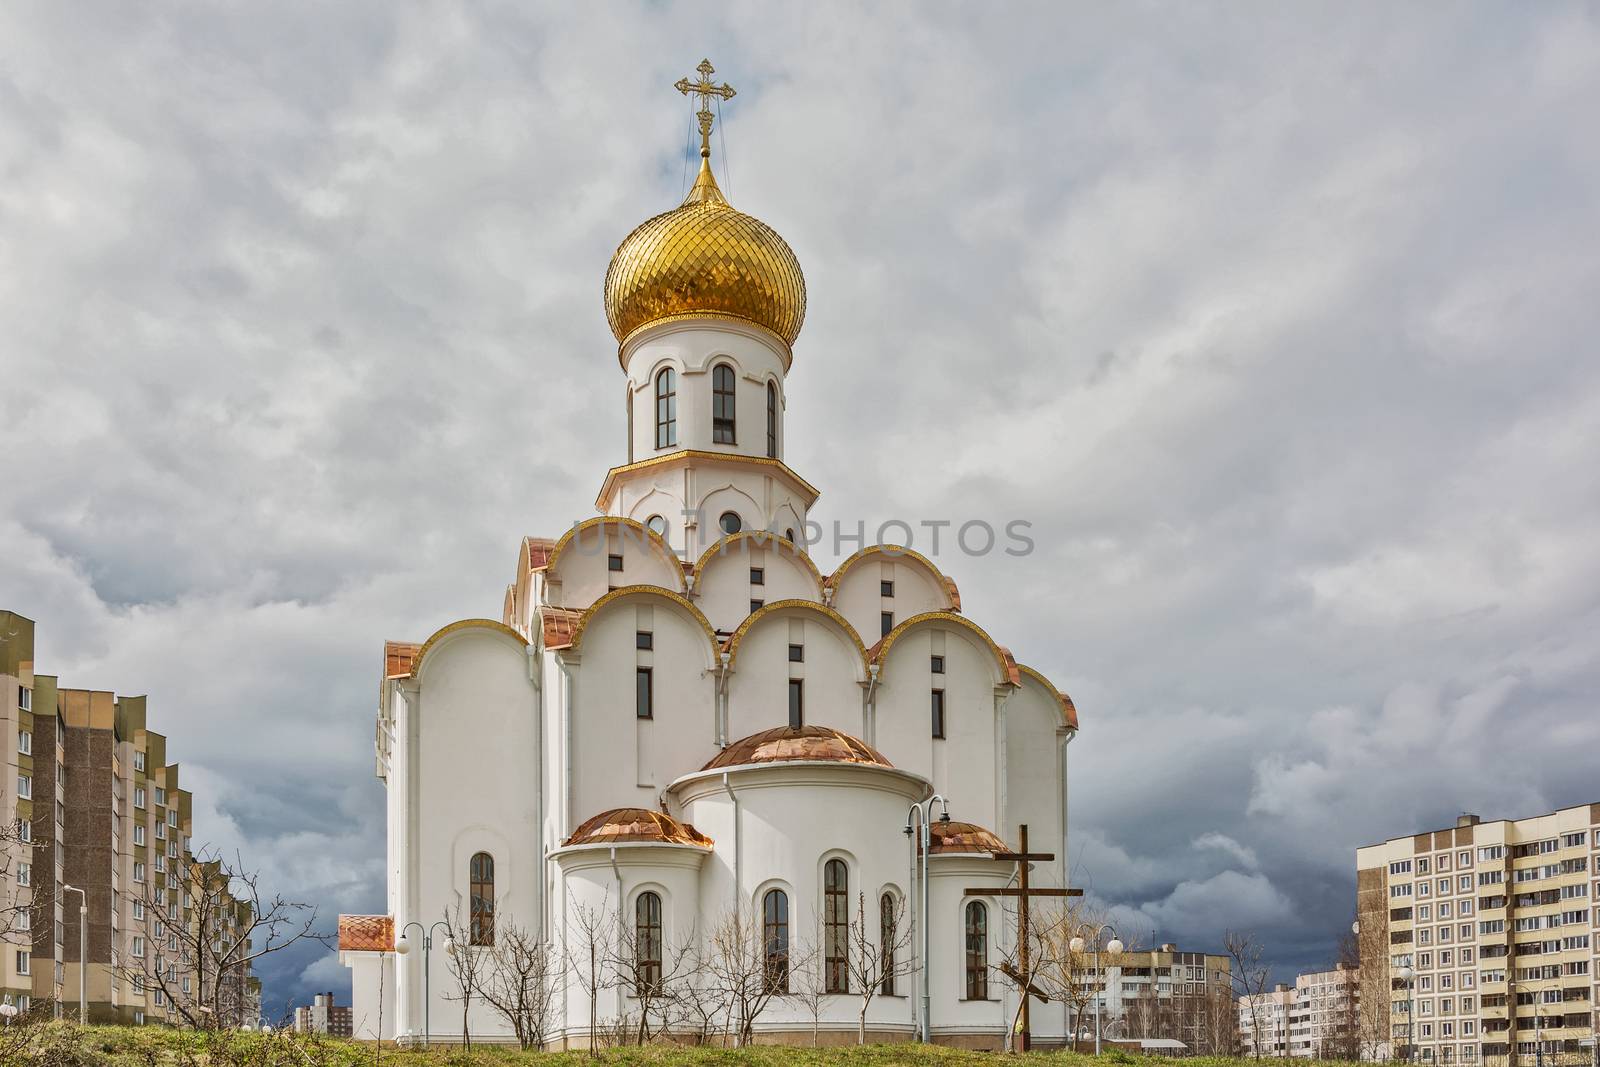 The Church of St. Michael the Archangel in Minsk (Belarus) by Grommik